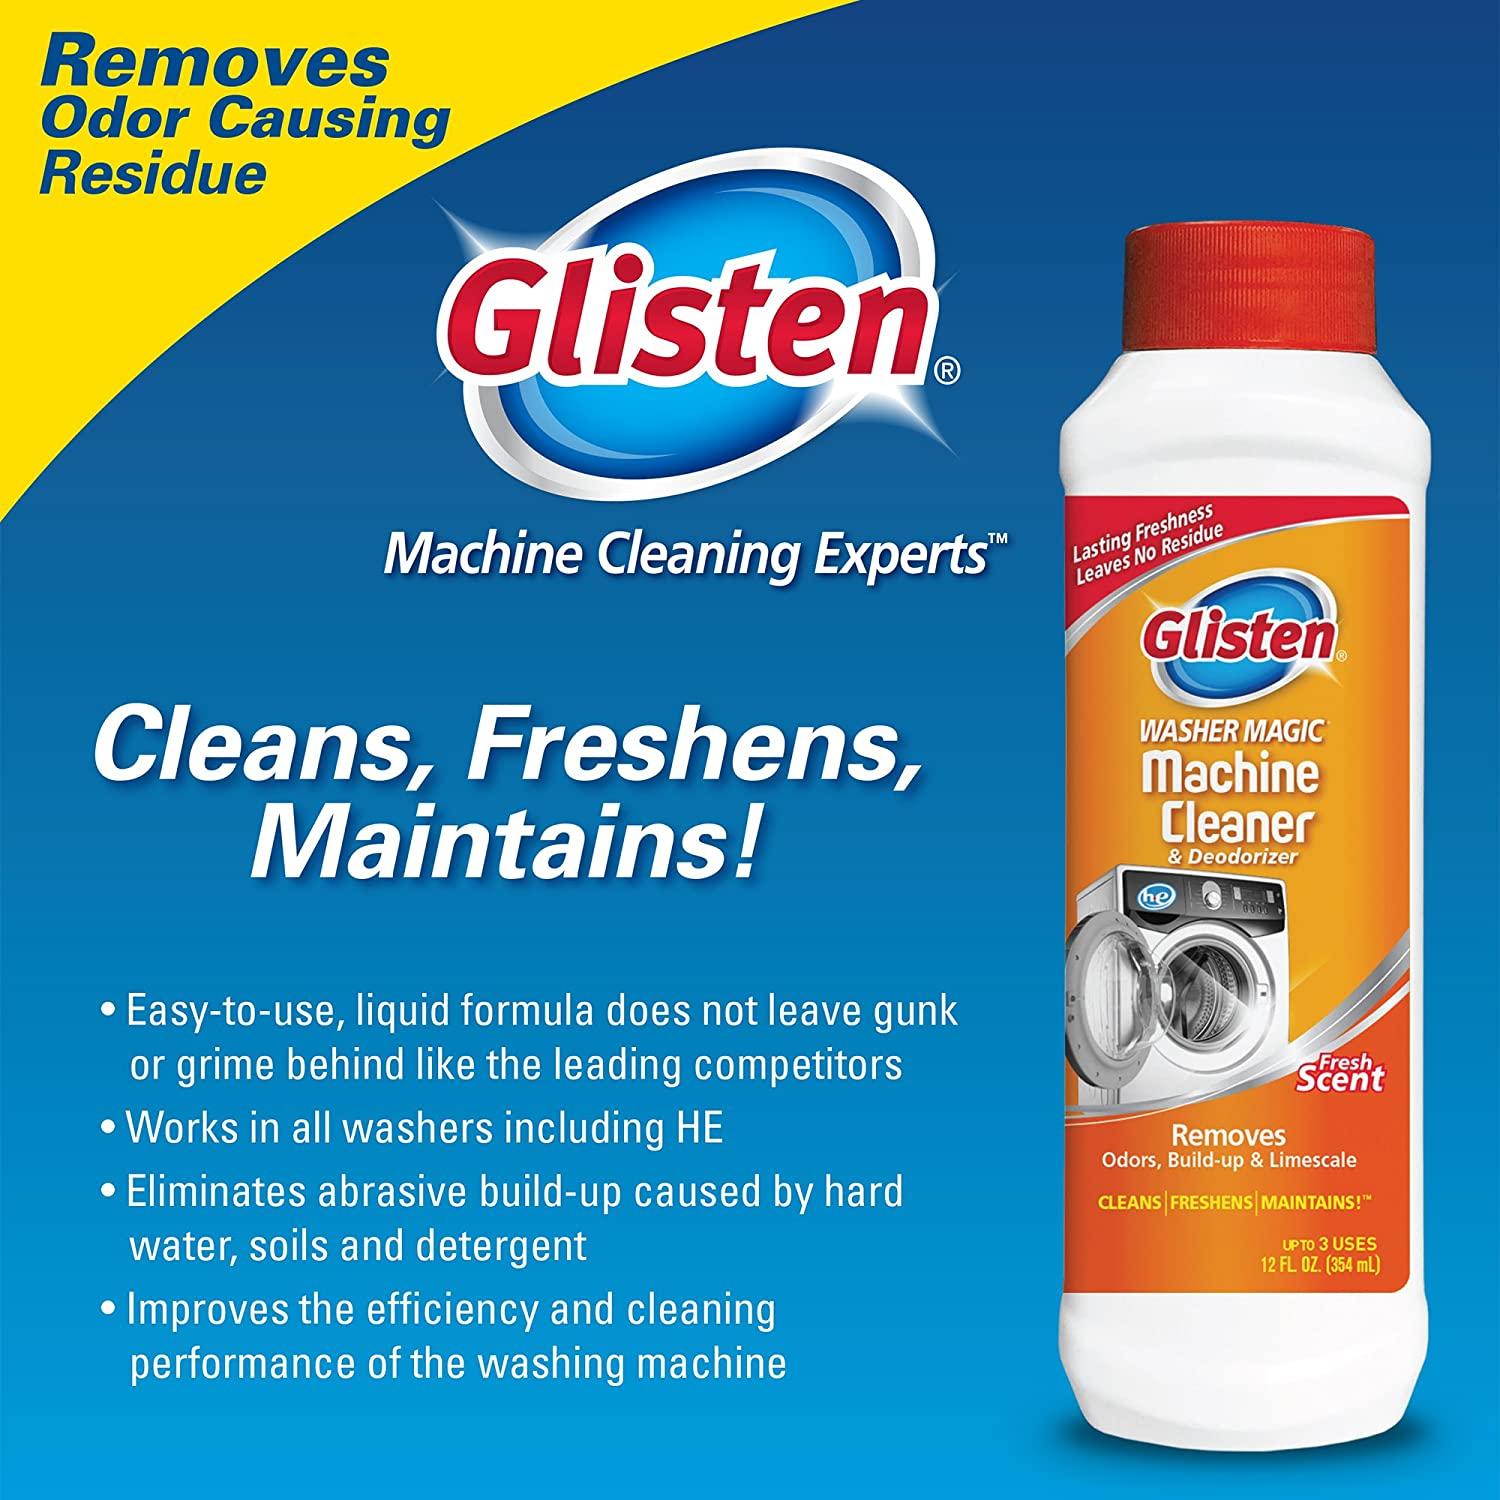 Glisten on Instagram: Glisten® Washing Machine Cleaner removes